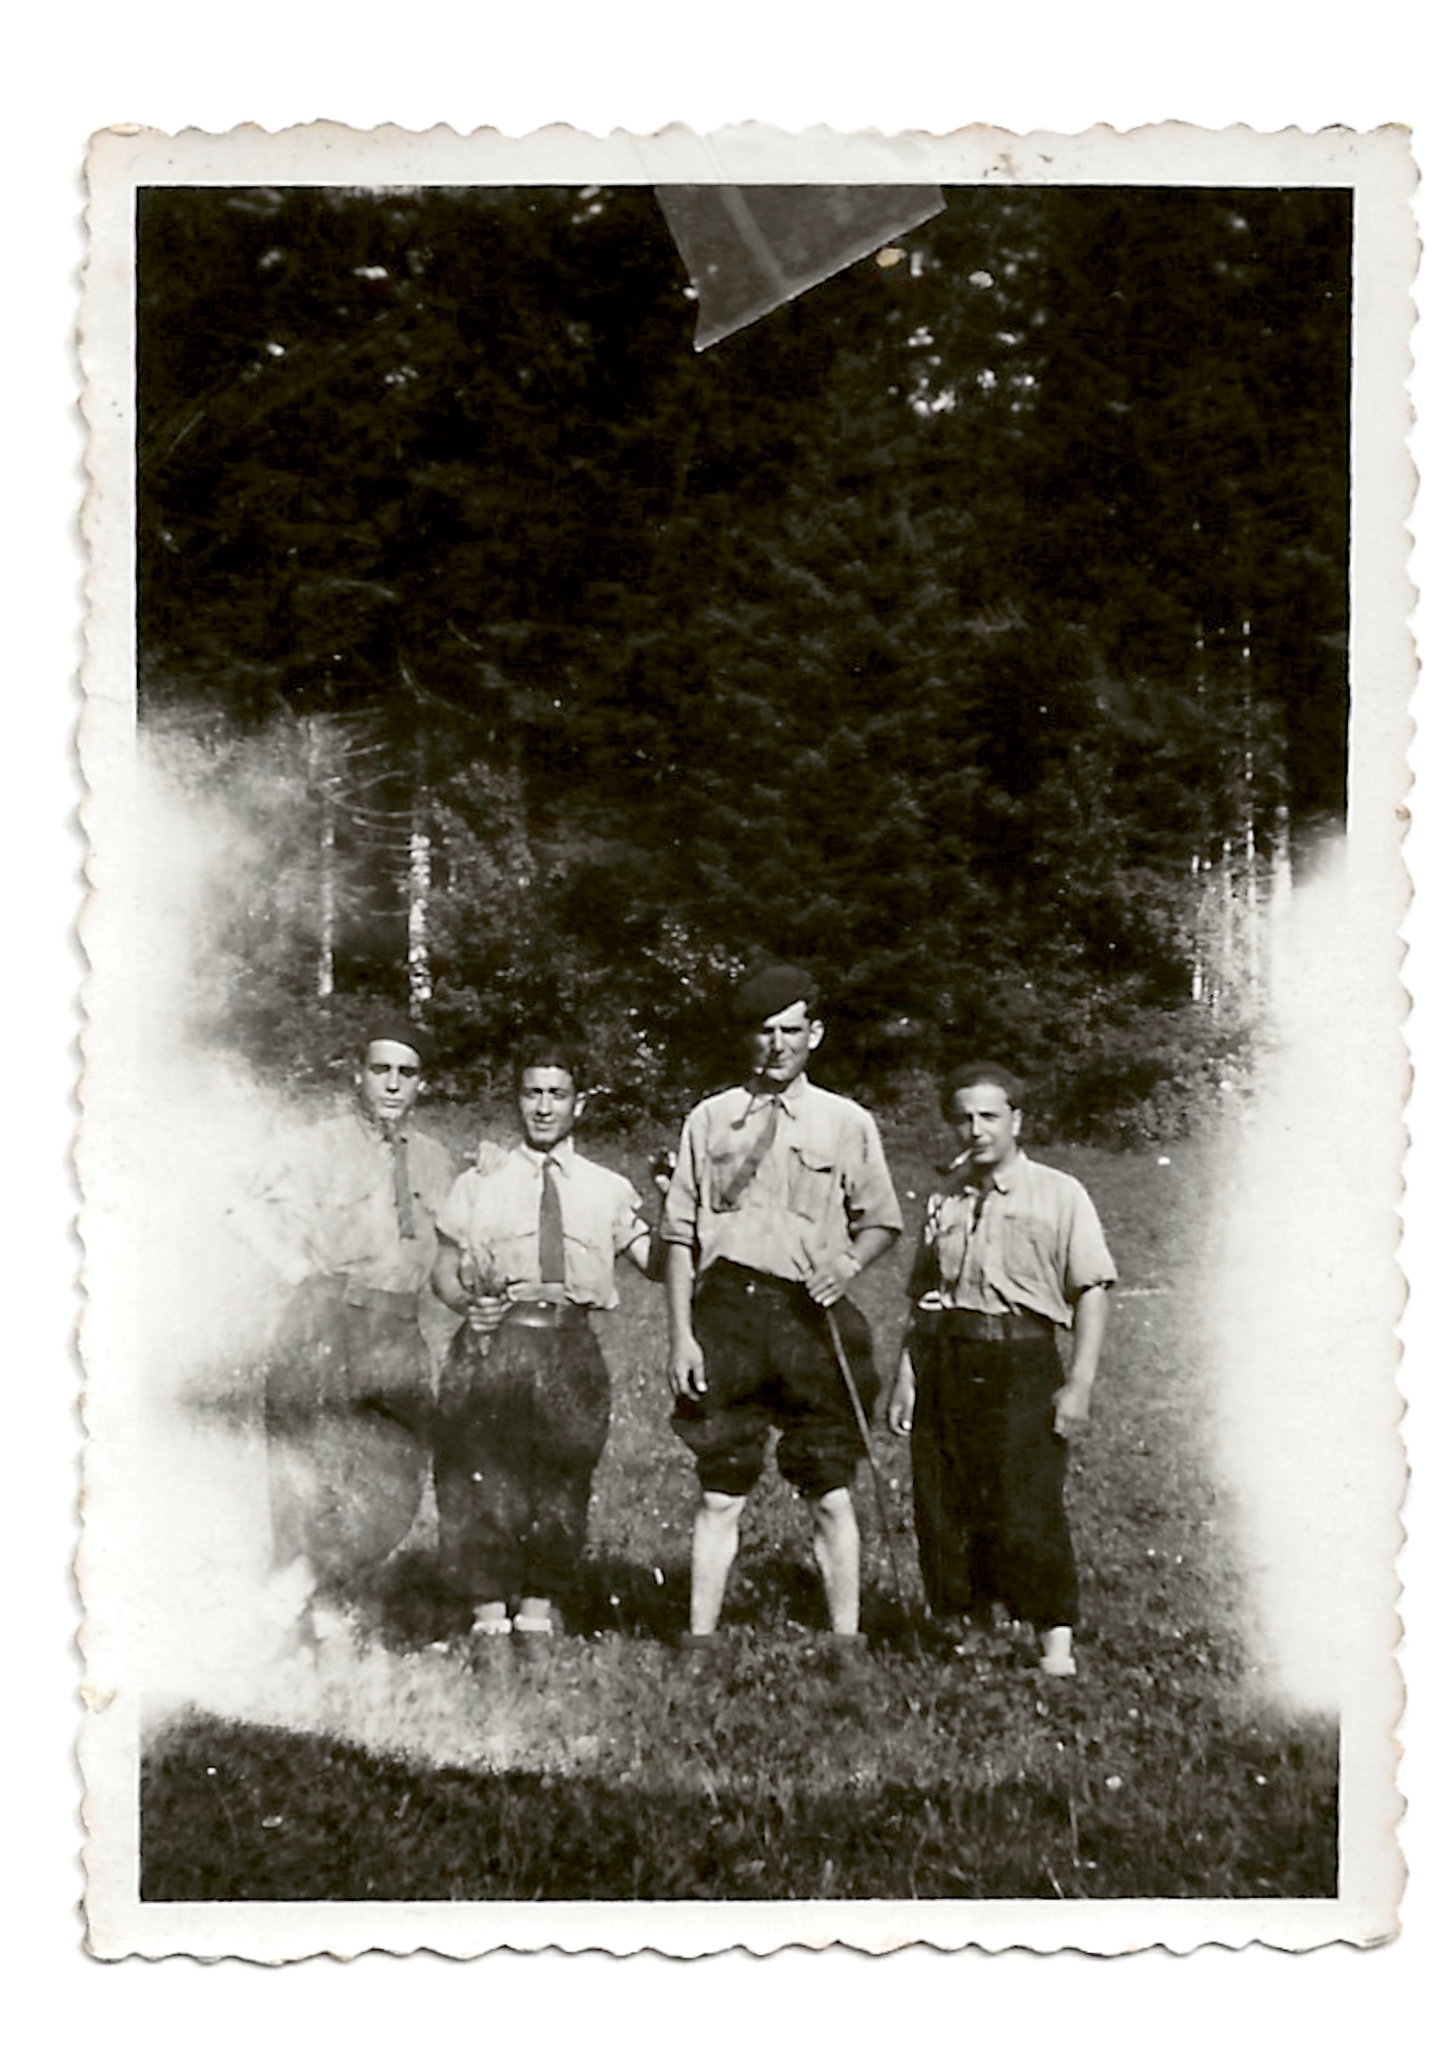 Chantier de la Ferme Guichard classe 1940 - Planachat [Cormaranche ] © Yves Marcoccia